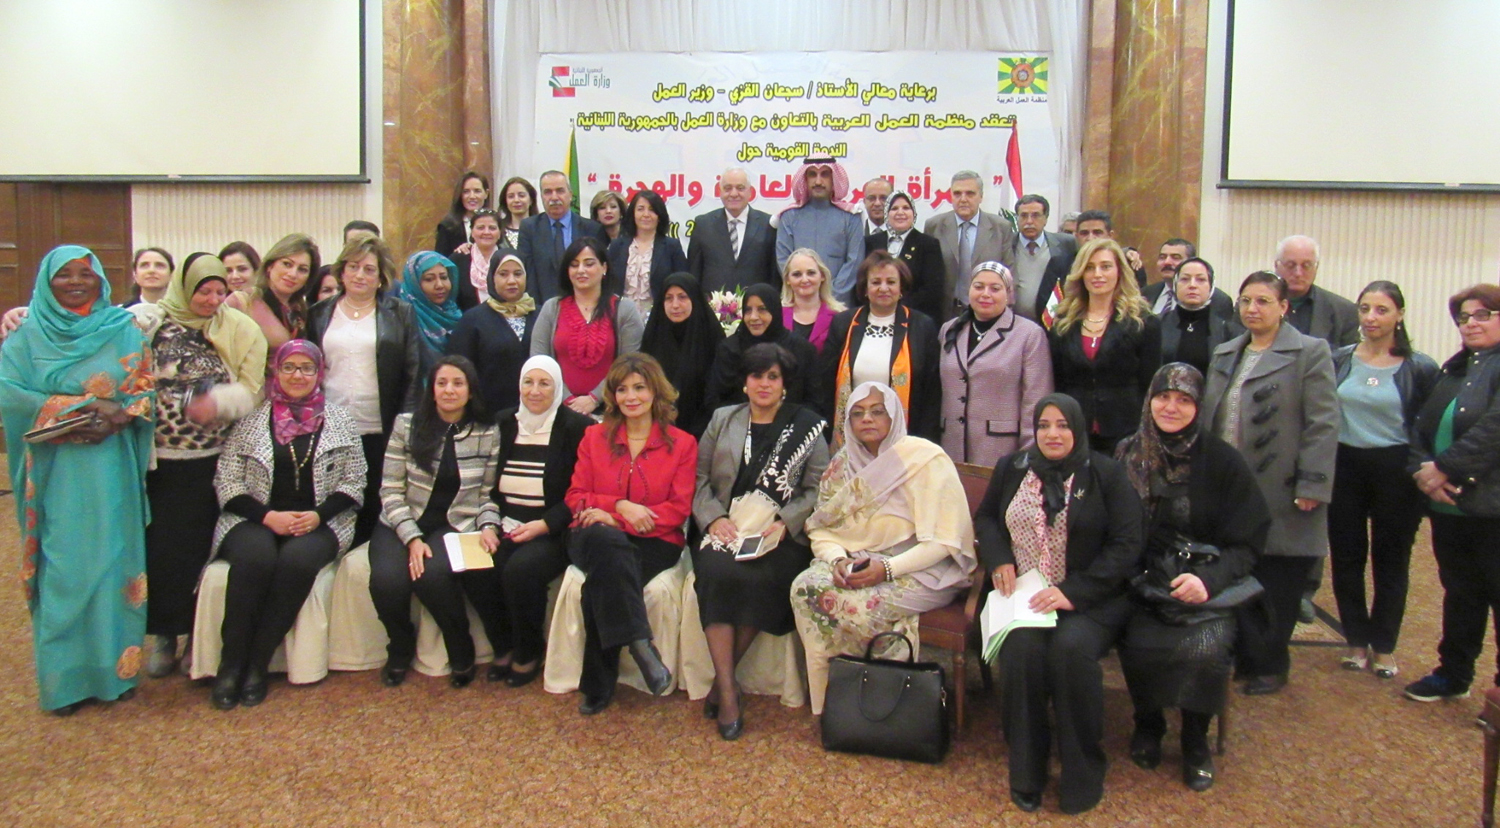 المشاركون في الندوة القومية حول (المرأة العربية العاملة والهجرة) التي نظمتها منظمة العمل العربية في بيروت